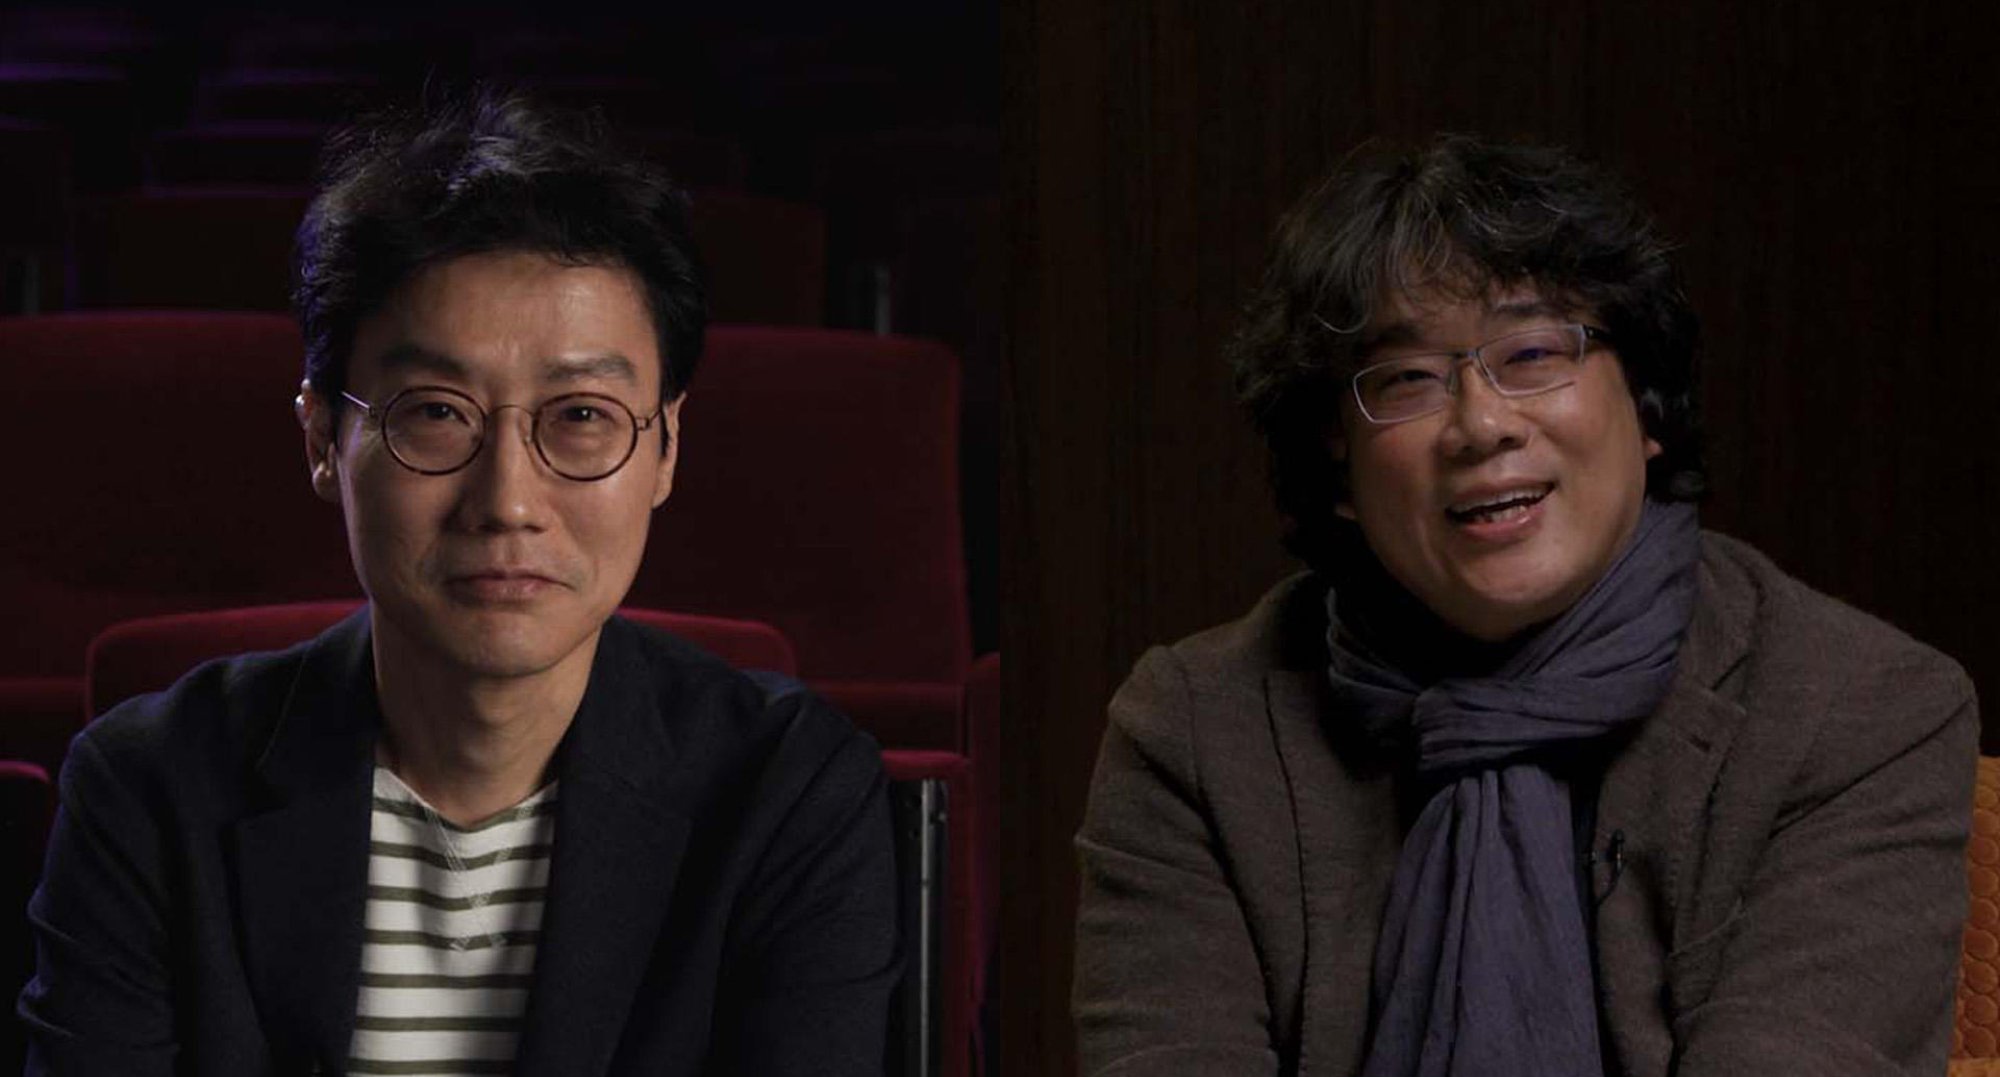 'Squid Game' director Hwang Dong-hyuk and 'Parasite' director Bong Joon-ho.